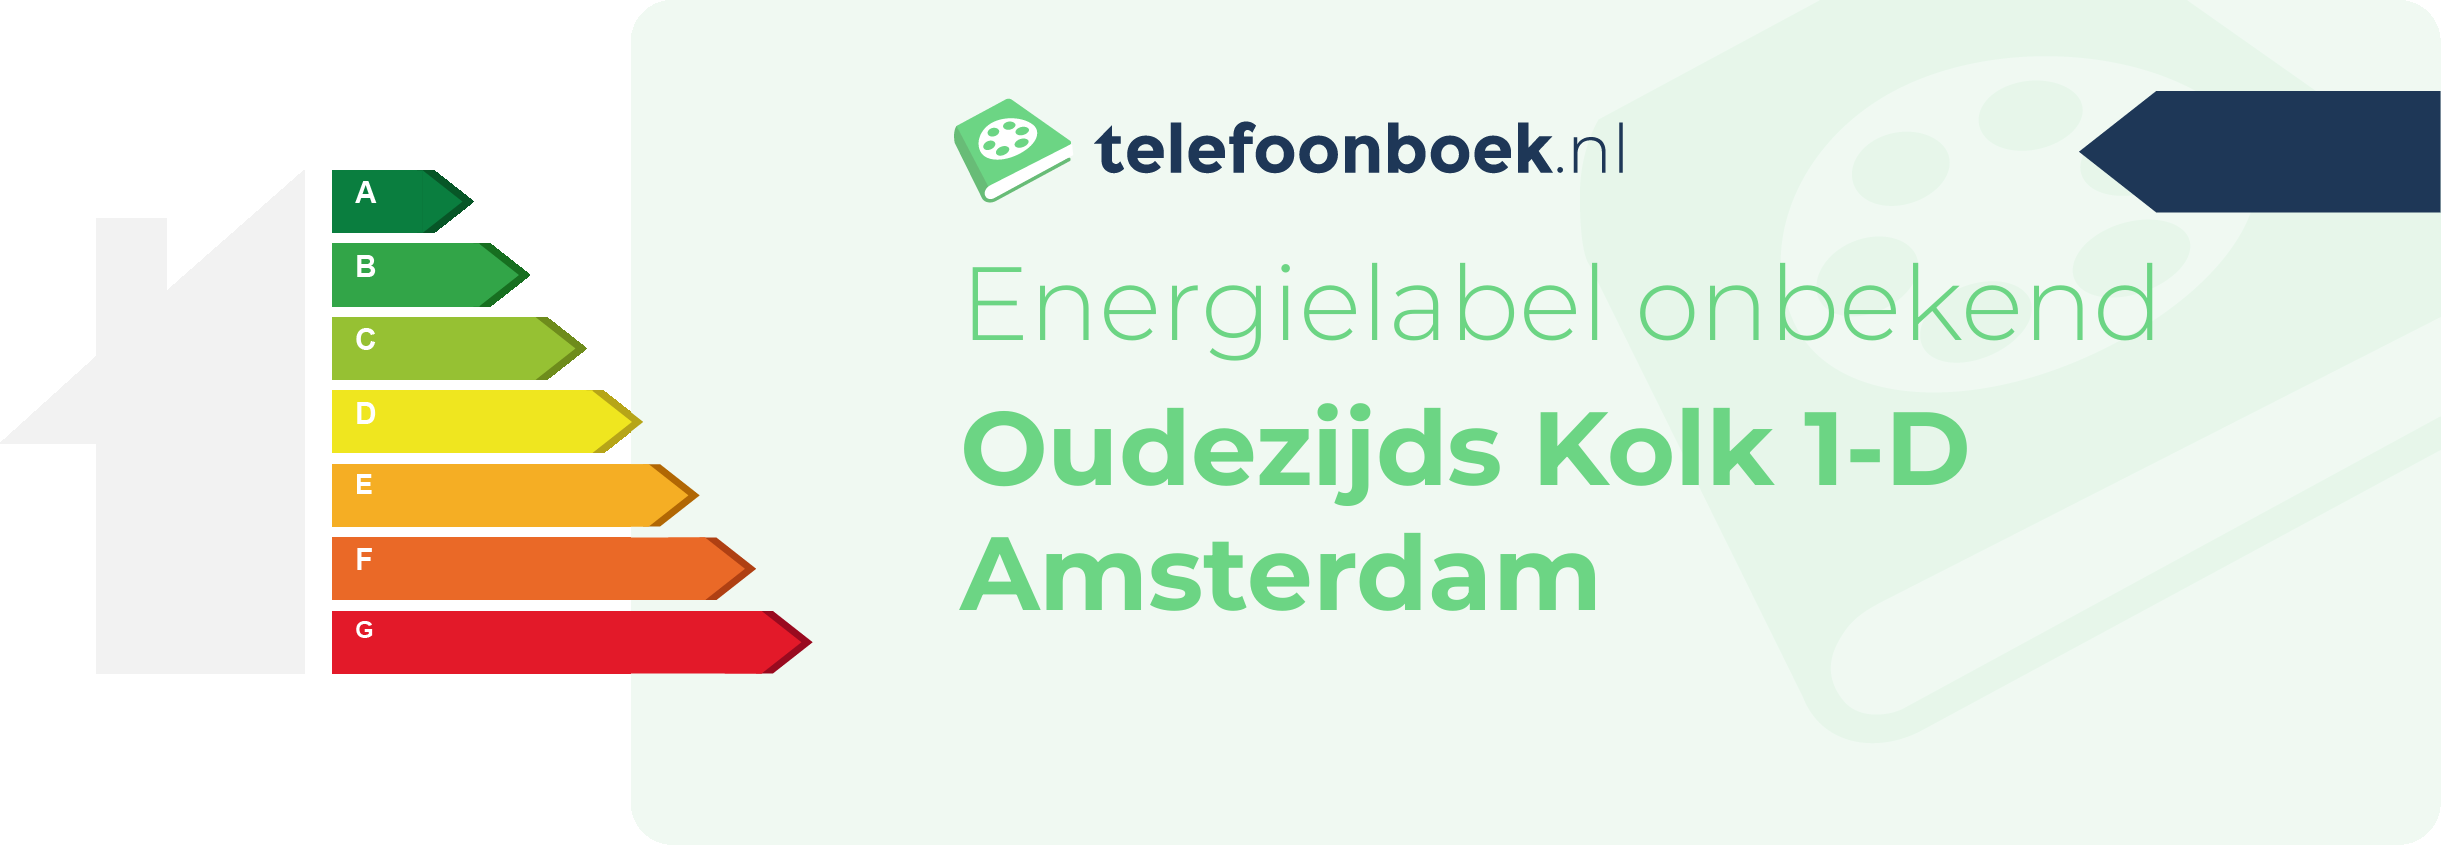 Energielabel Oudezijds Kolk 1-D Amsterdam